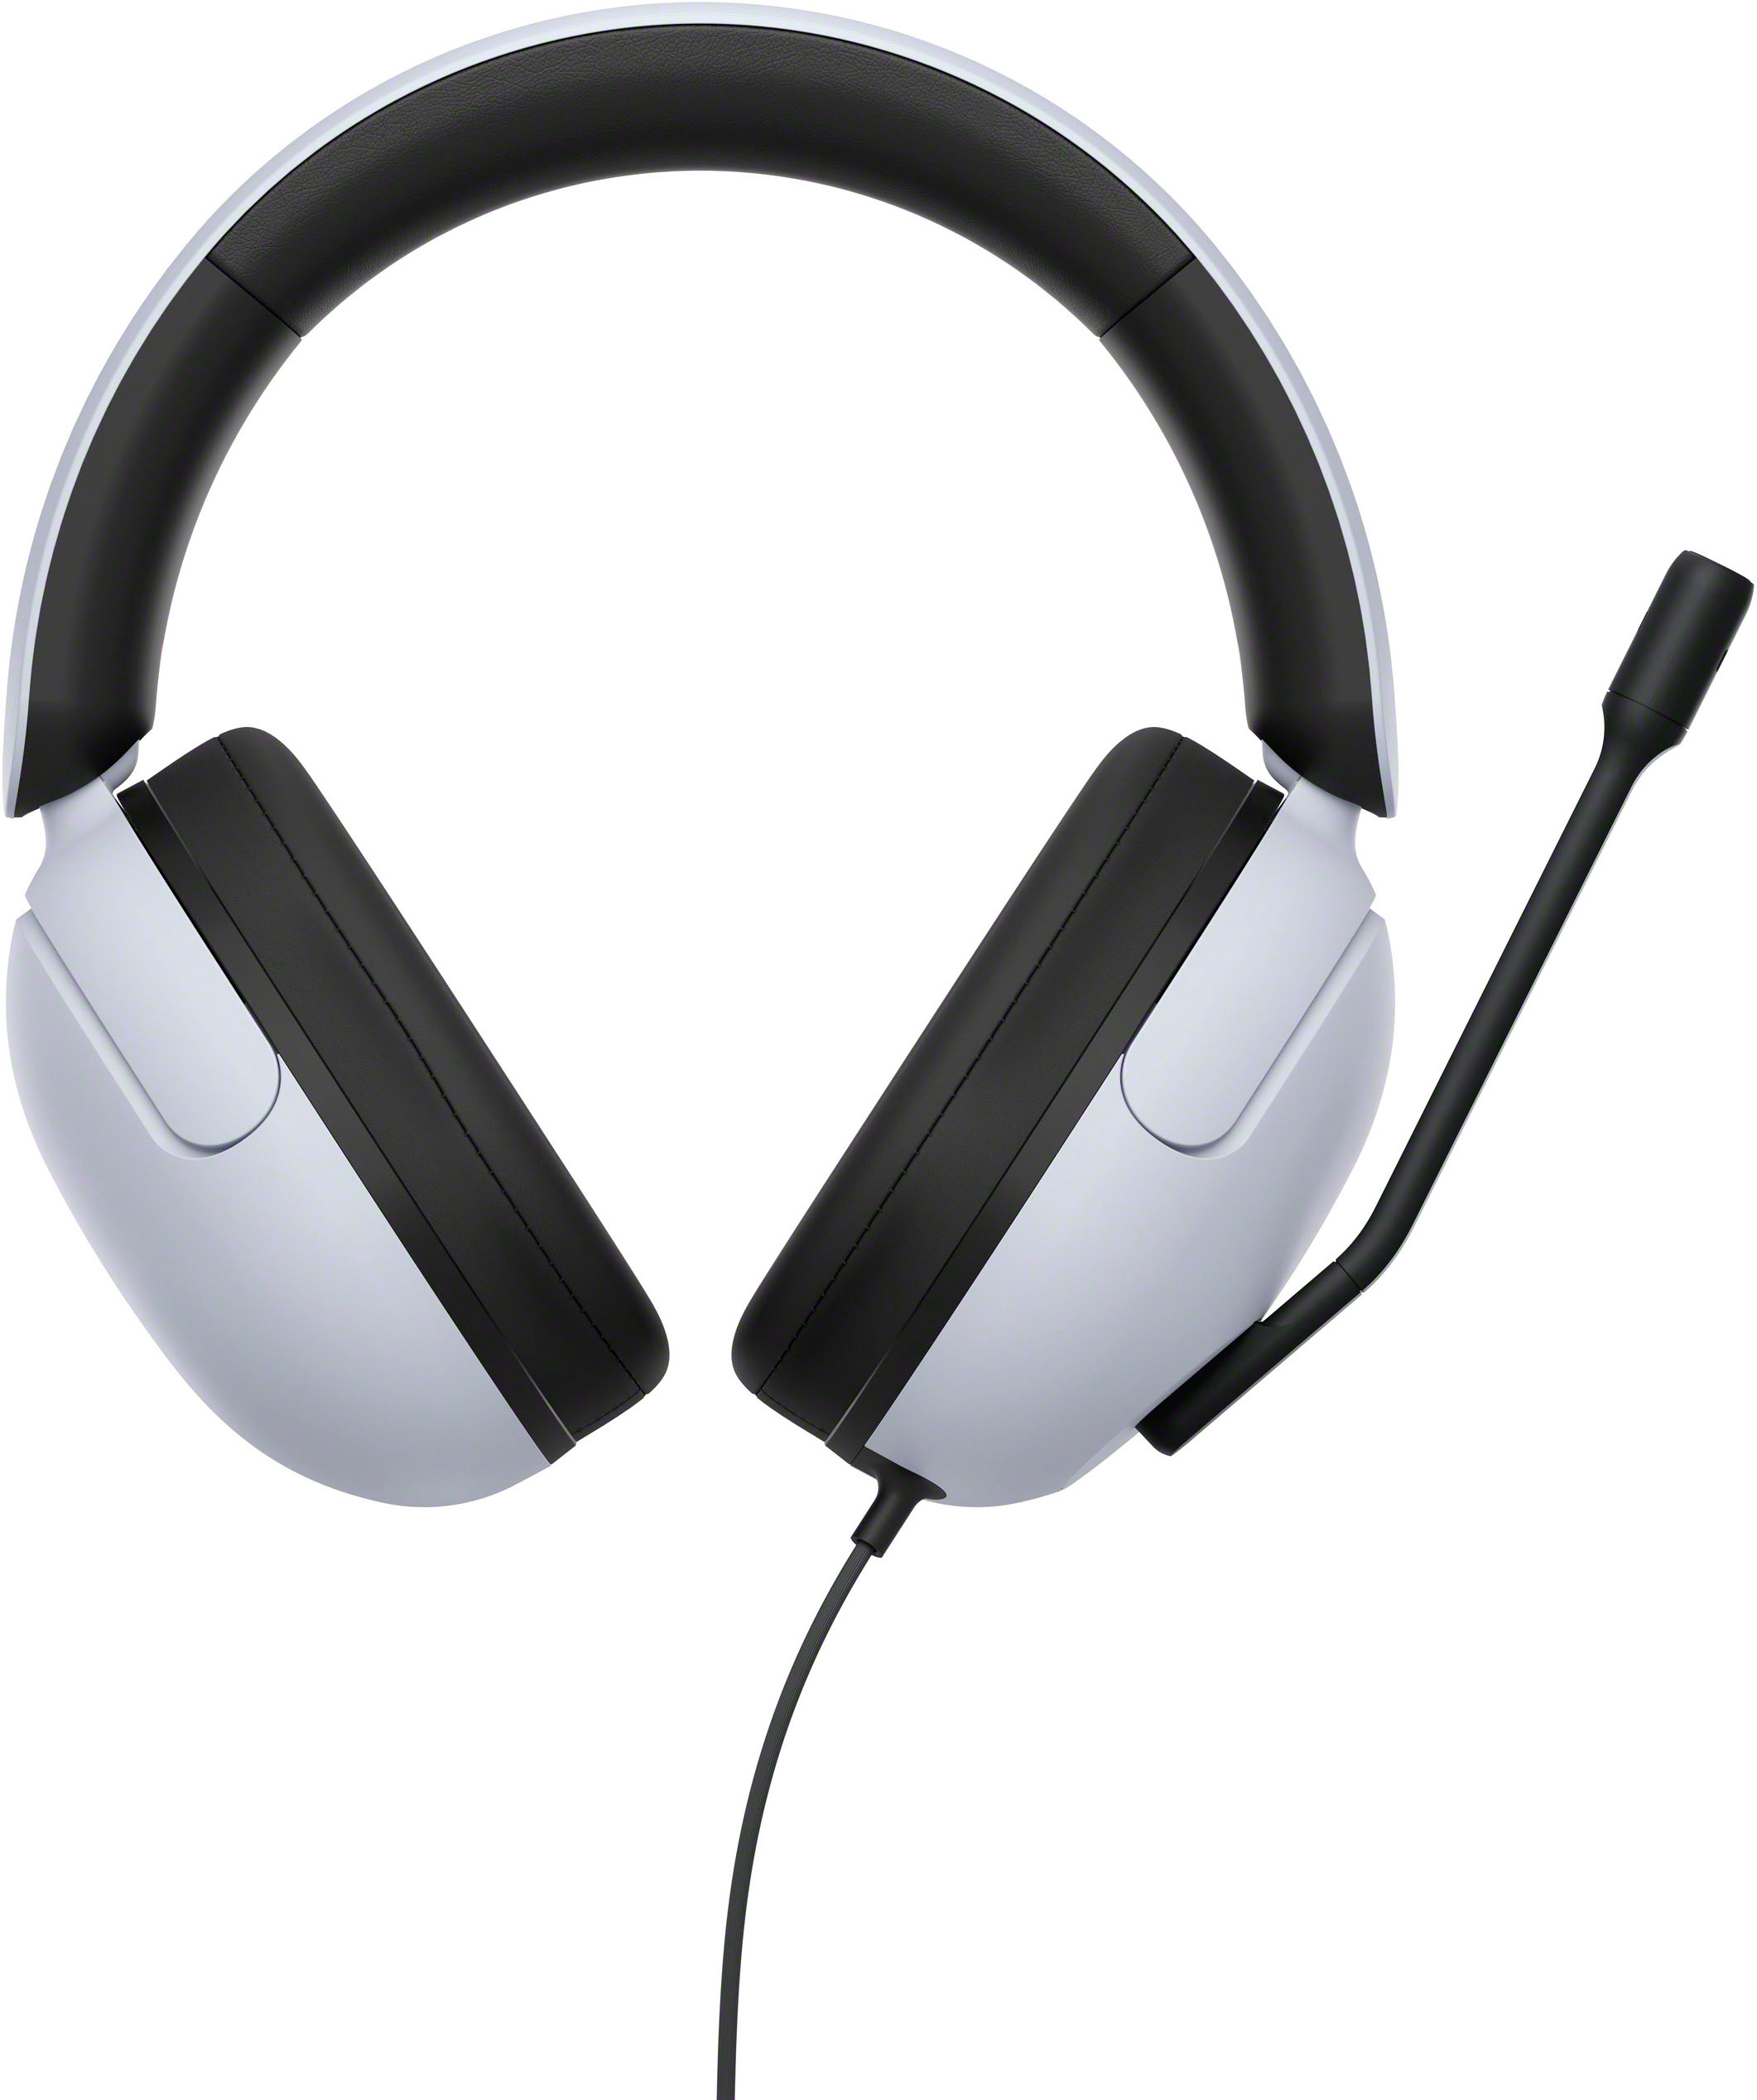 Sony Headphones & Earphones - Best Buy